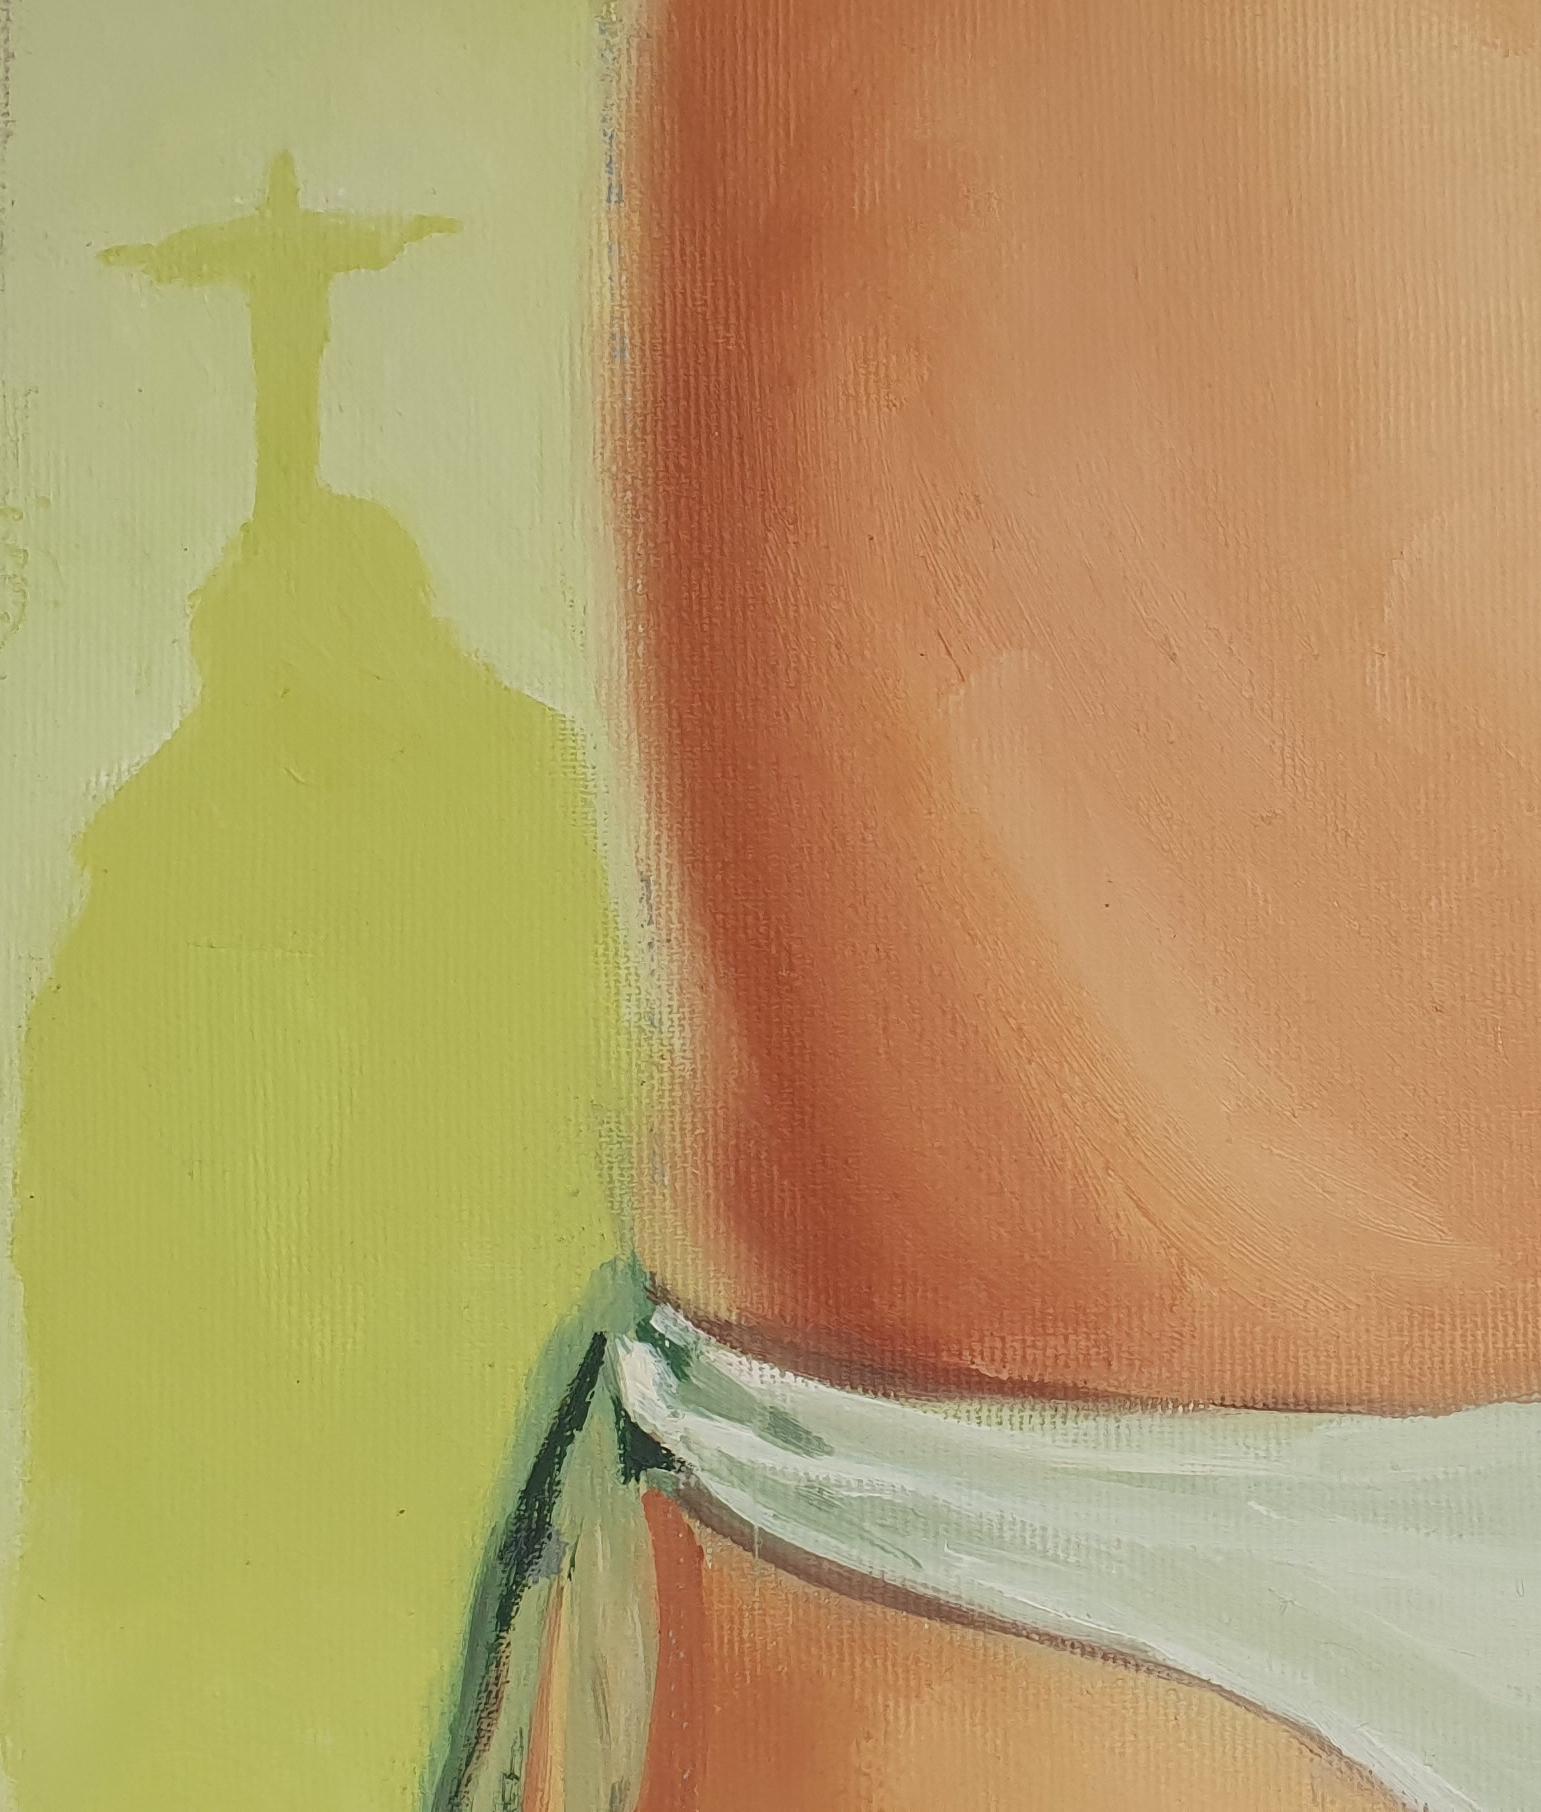 Brasilien, 2010
Öl auf Leinwand (Signiert, vorne rechts Mitte)
14.96 H x 18,11 W Zoll.
38 H x 46 B cm.

Die heutige Gesellschaft wird von dem Künstler Mihai Florea als eine 